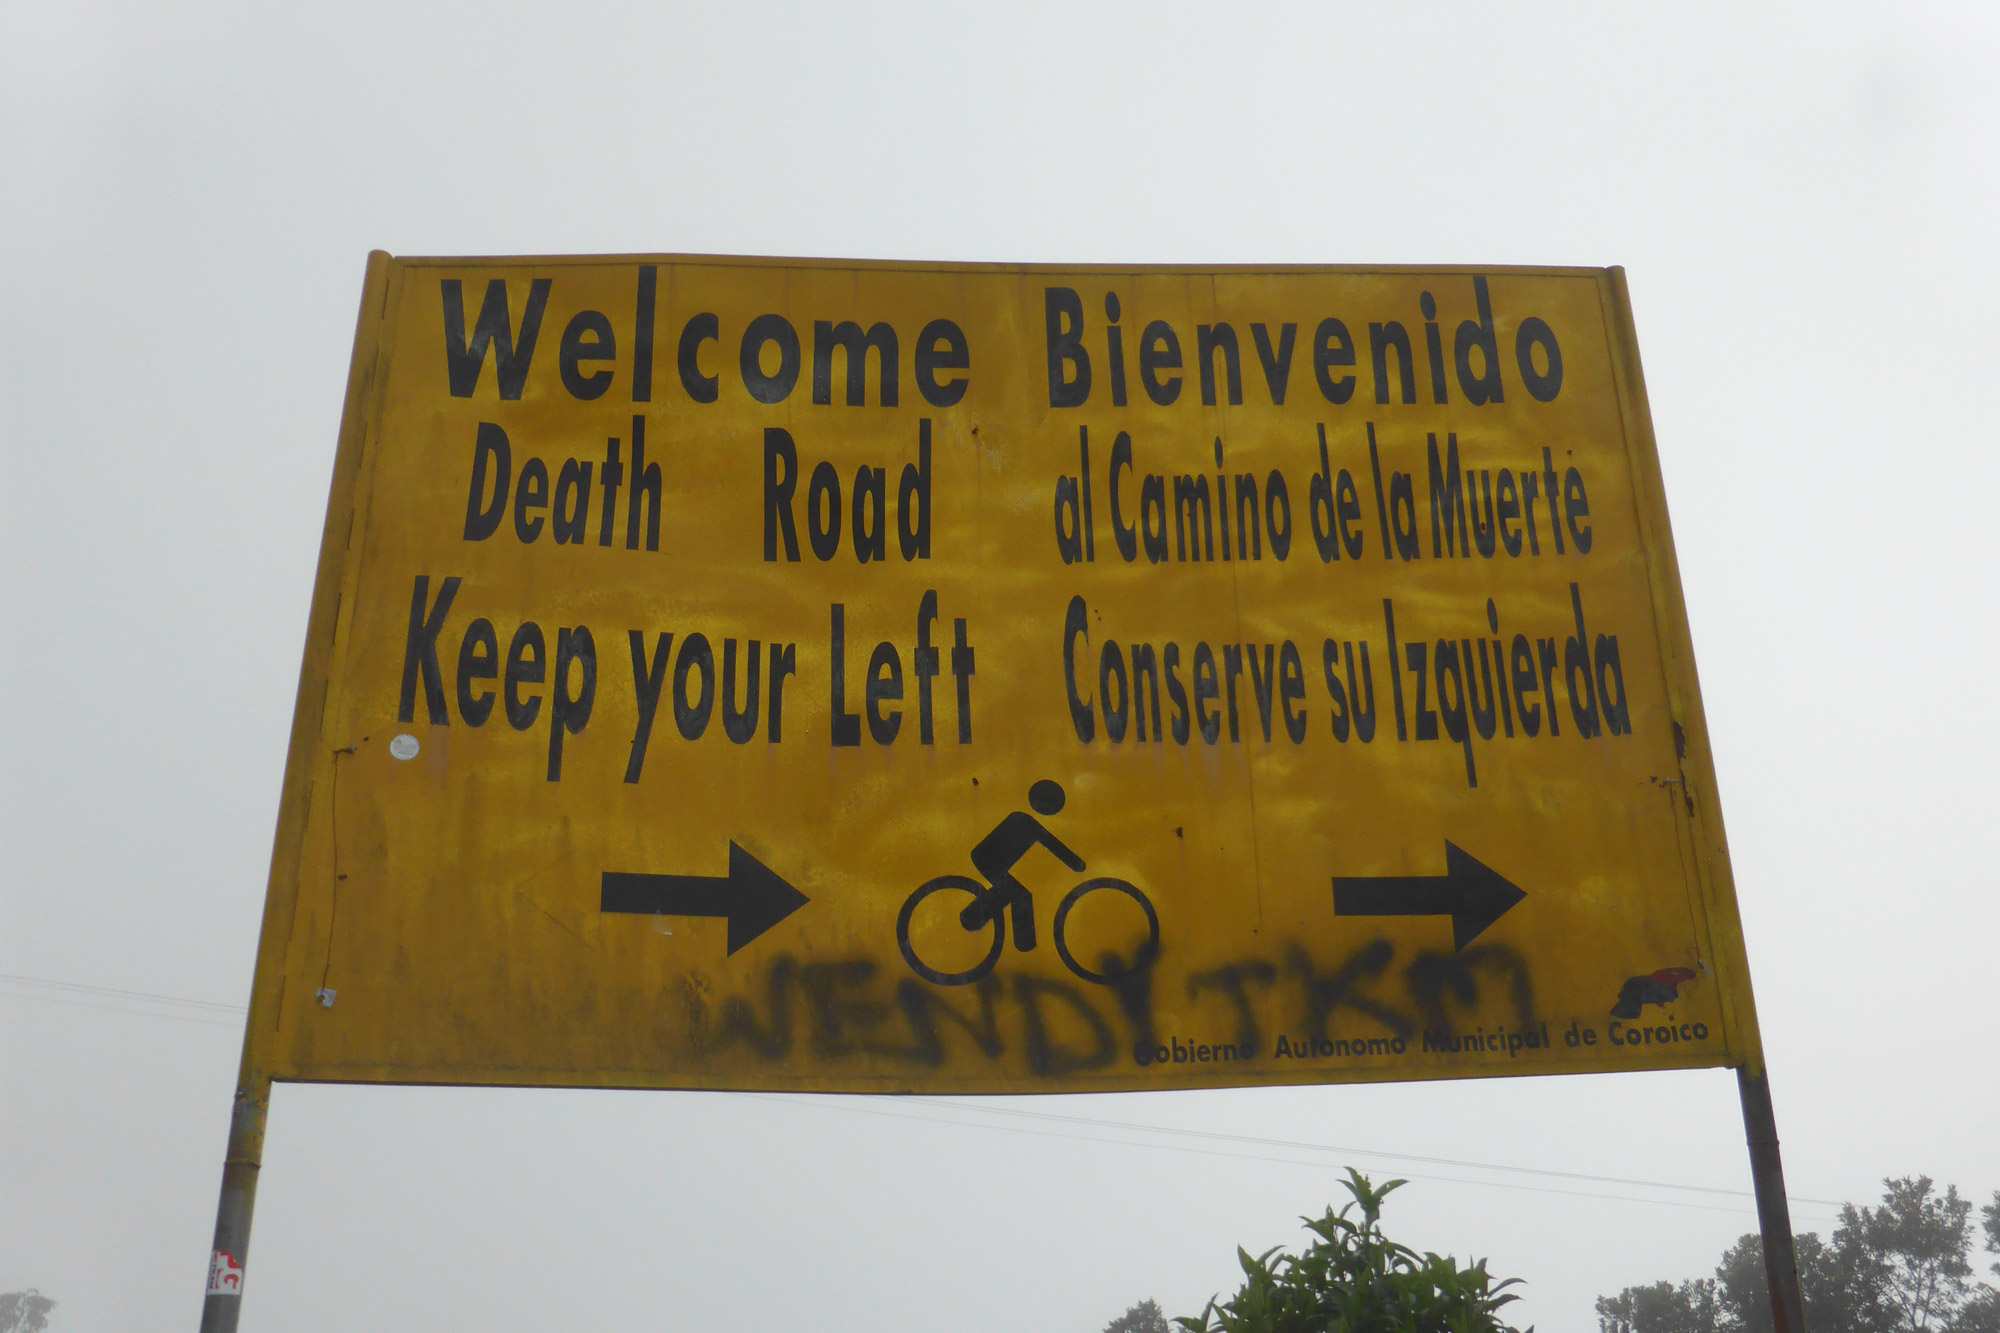 Reisverslaag Bolivia: We survived the Death Road - Het begin van de Caminos de Muerte / Death Road / Camino de las Yungas